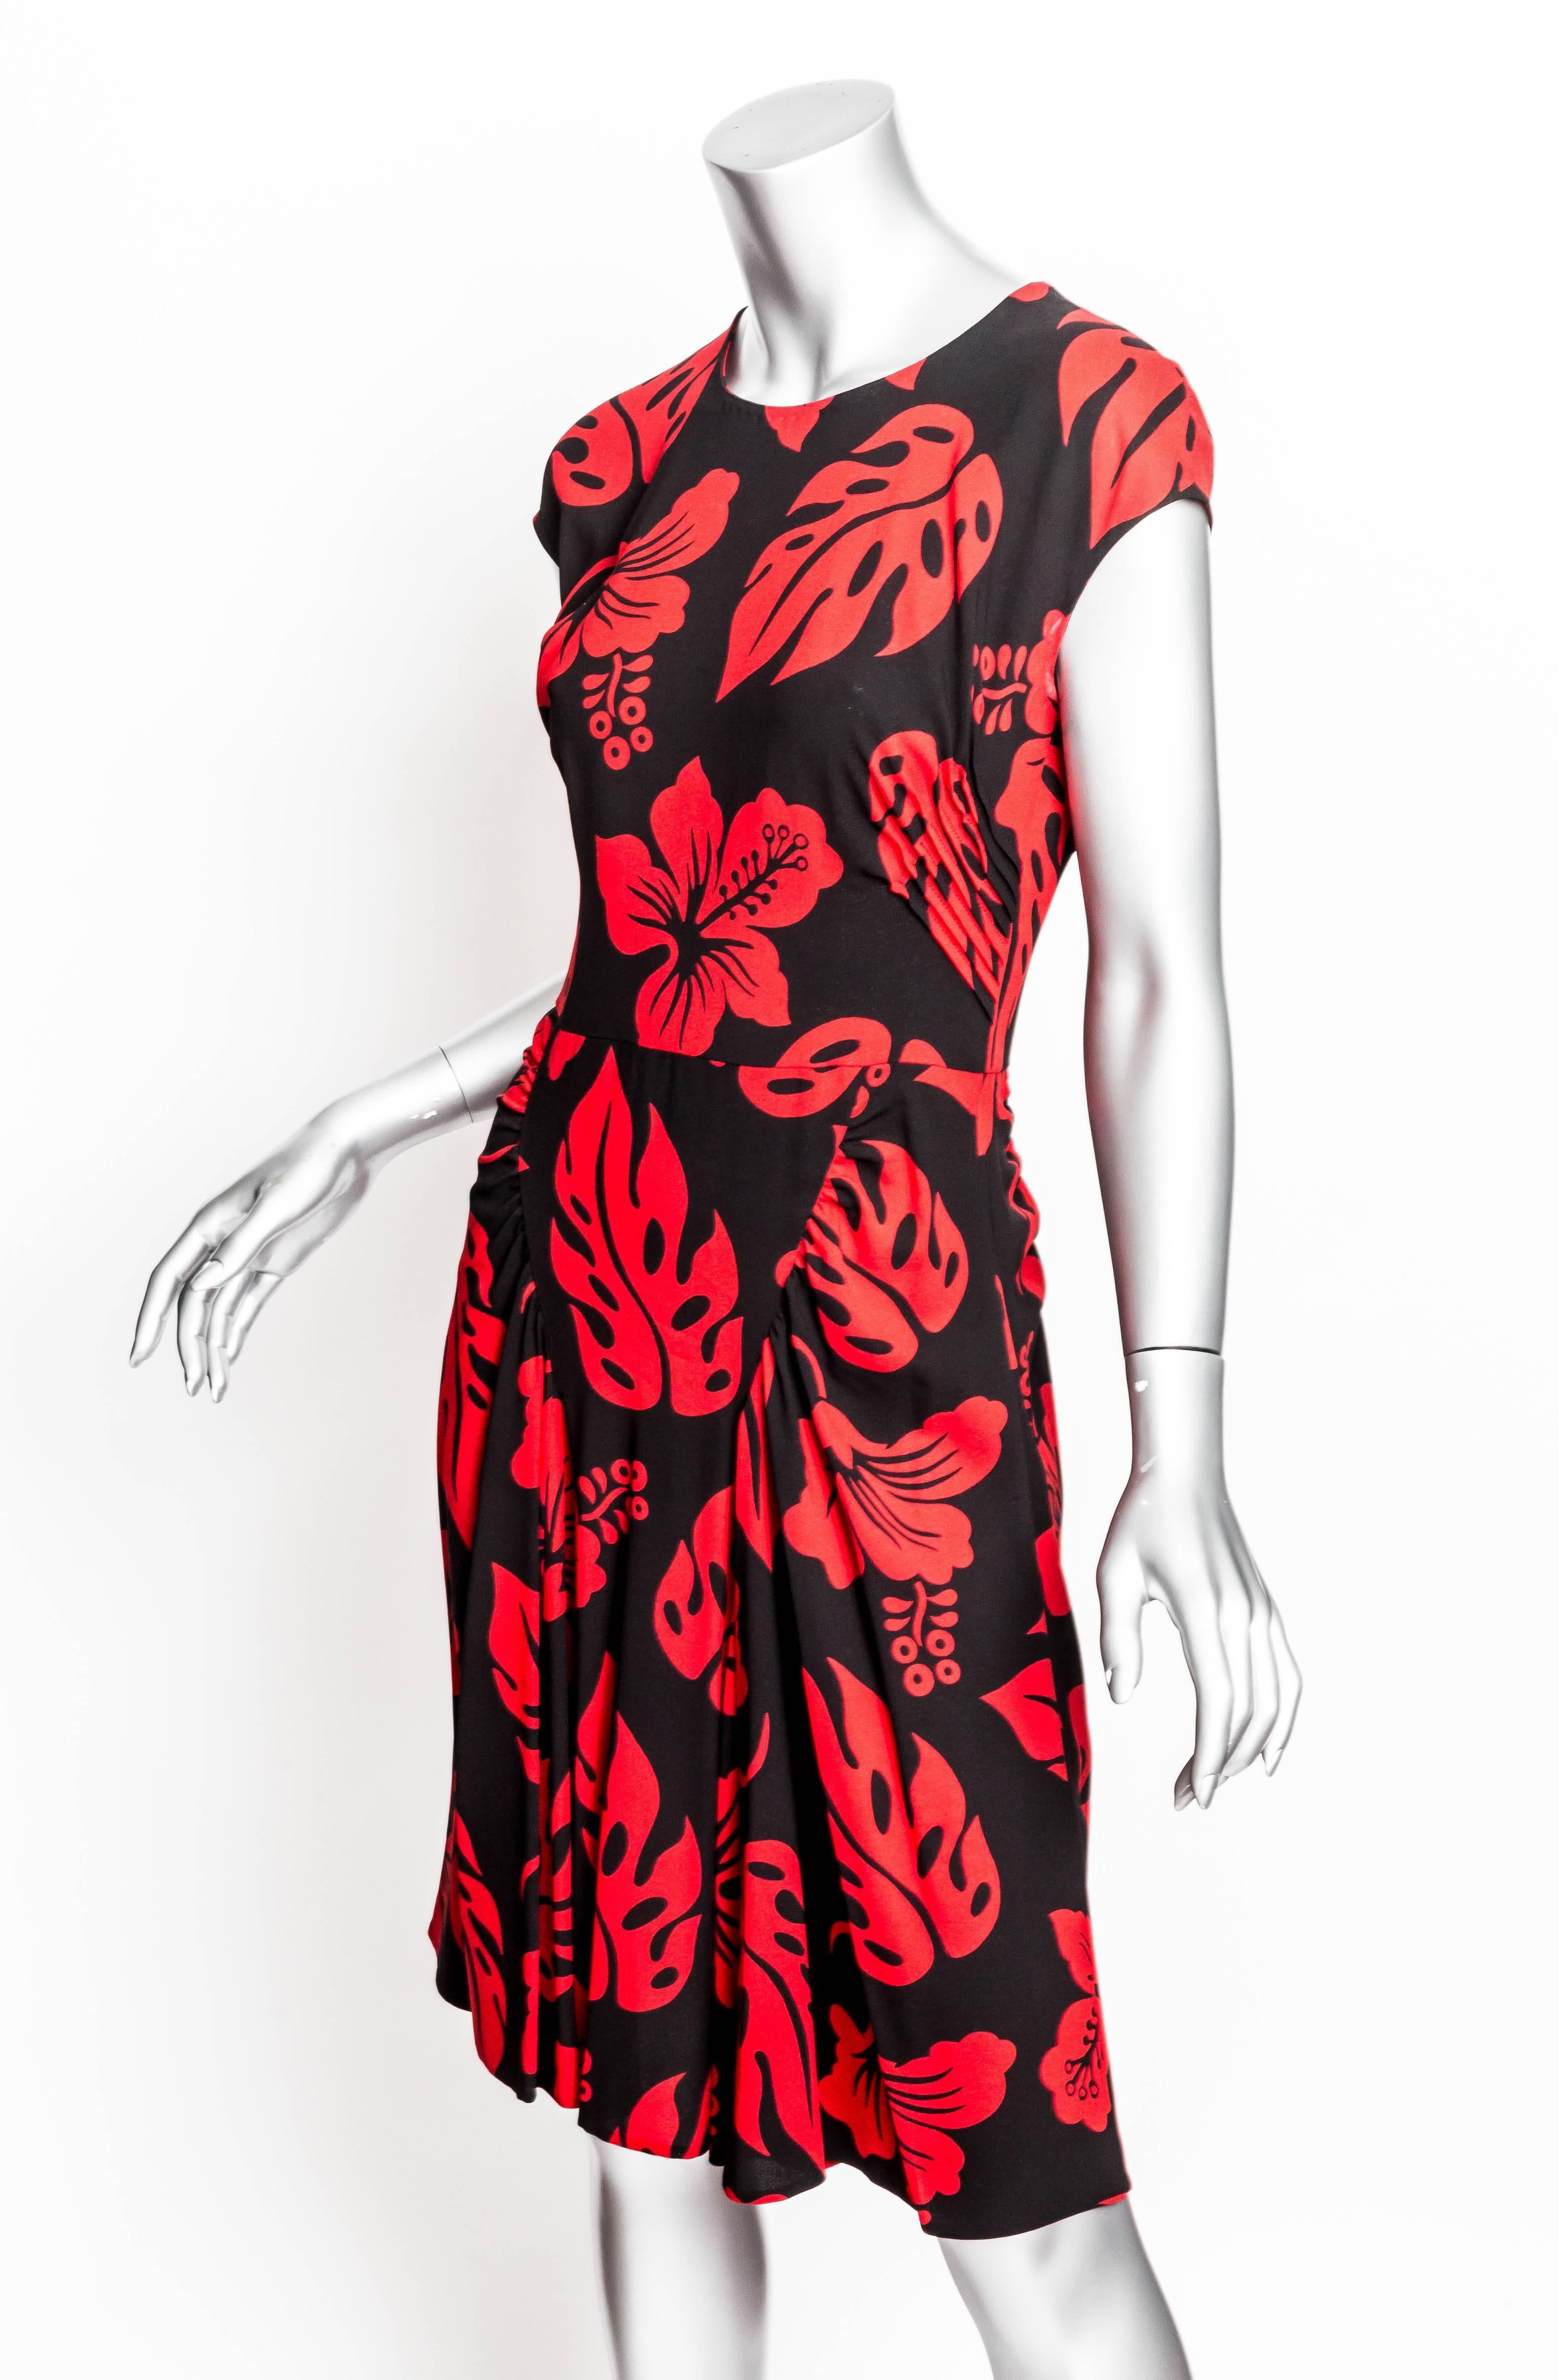 Prada Red and Black Print Dress - 44 2